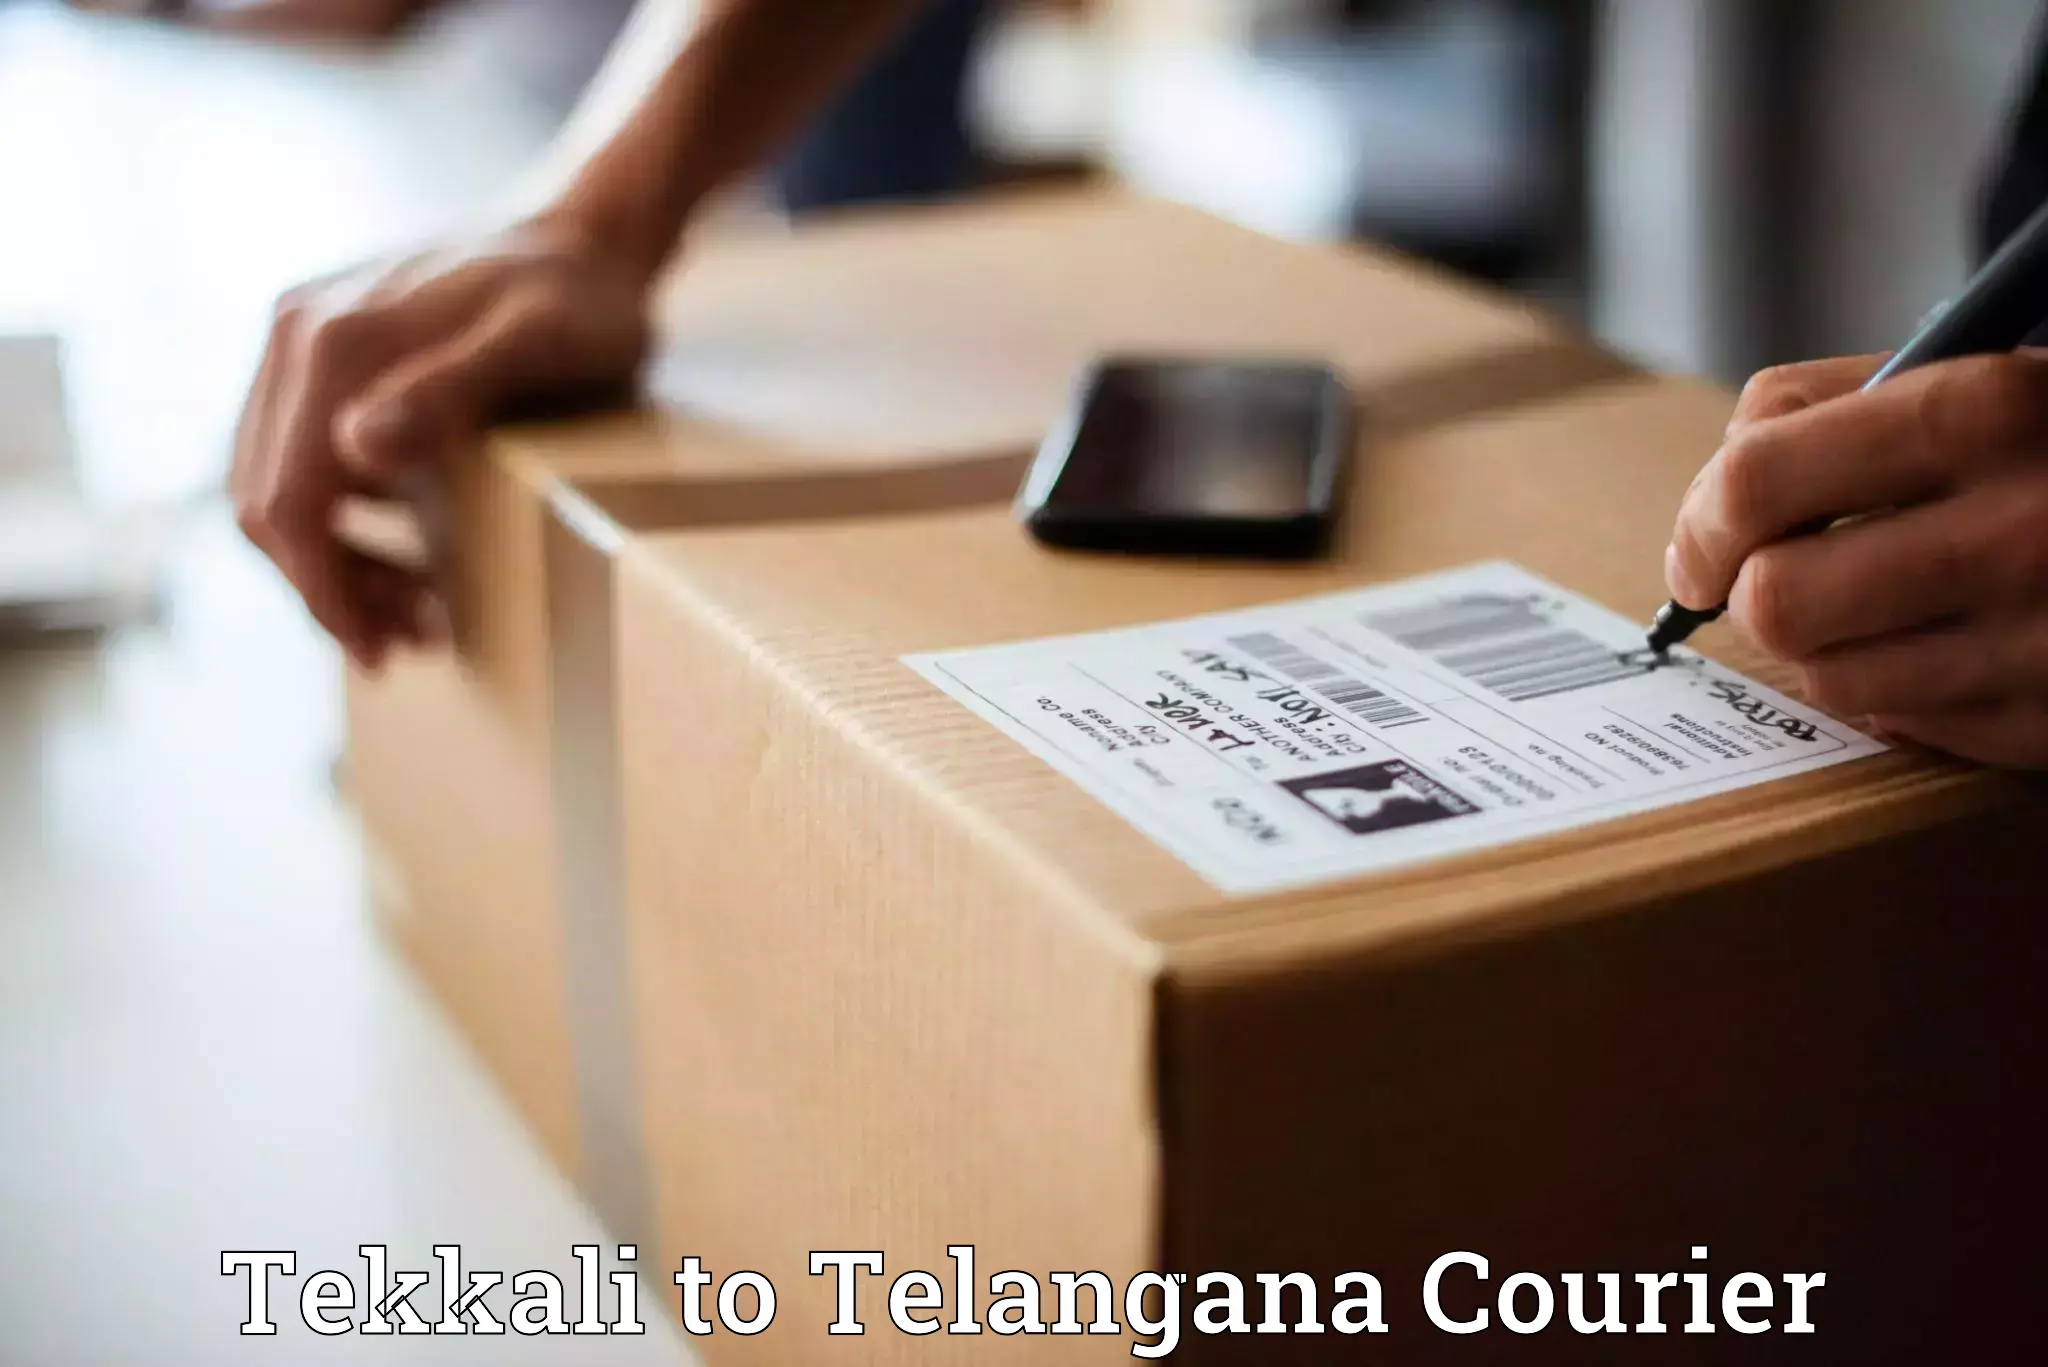 Premium courier services in Tekkali to Kalwakurthy